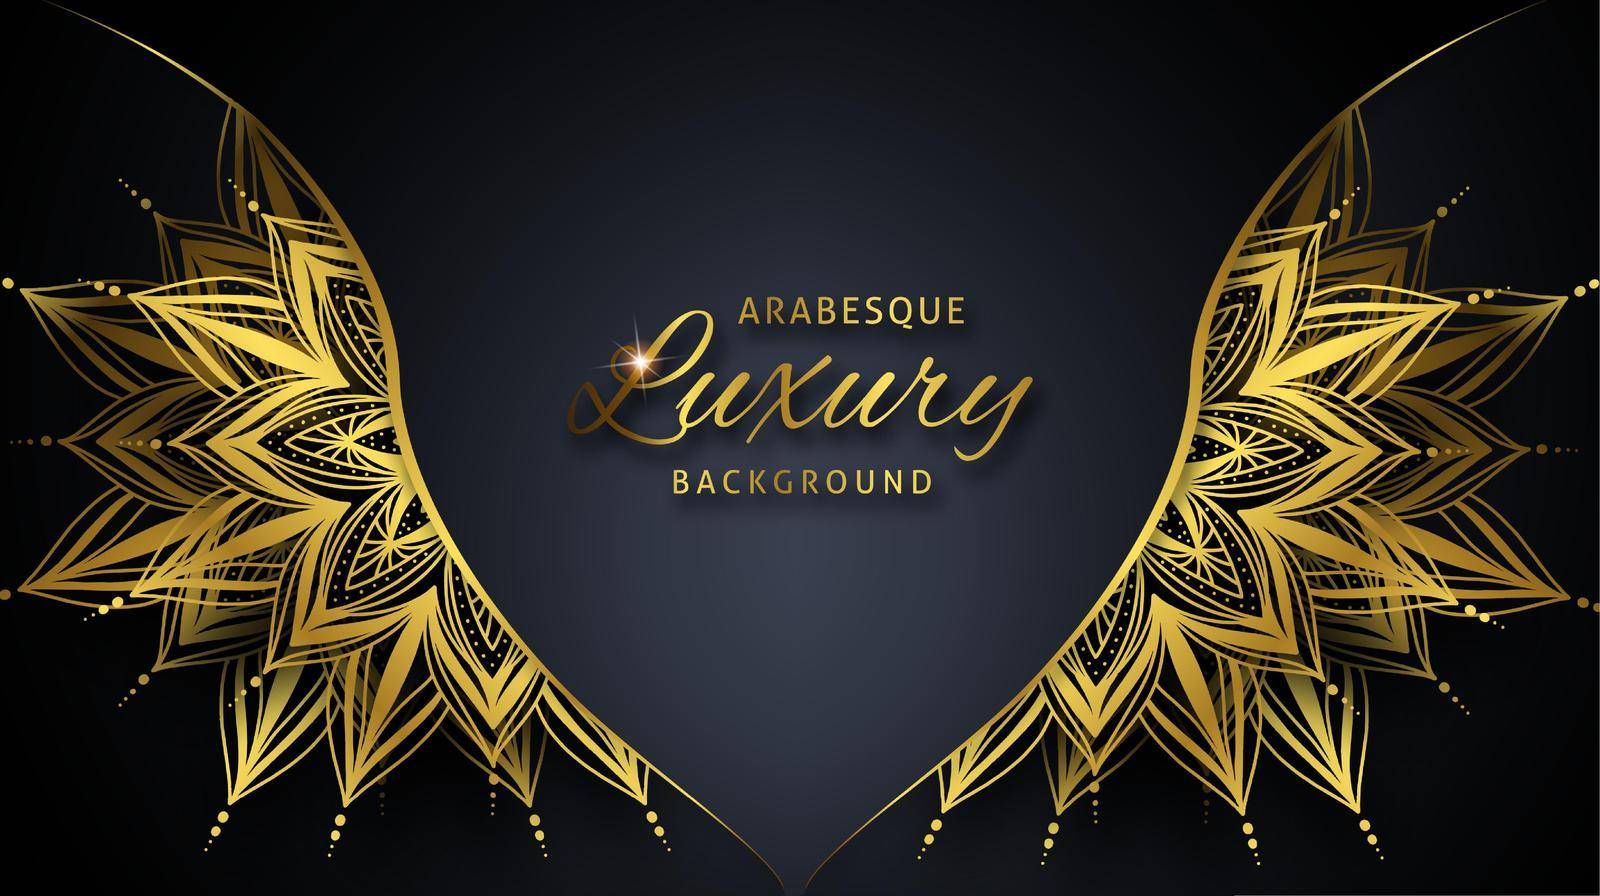 Arabesque Luxury background with gold mandala. by ku4erashka